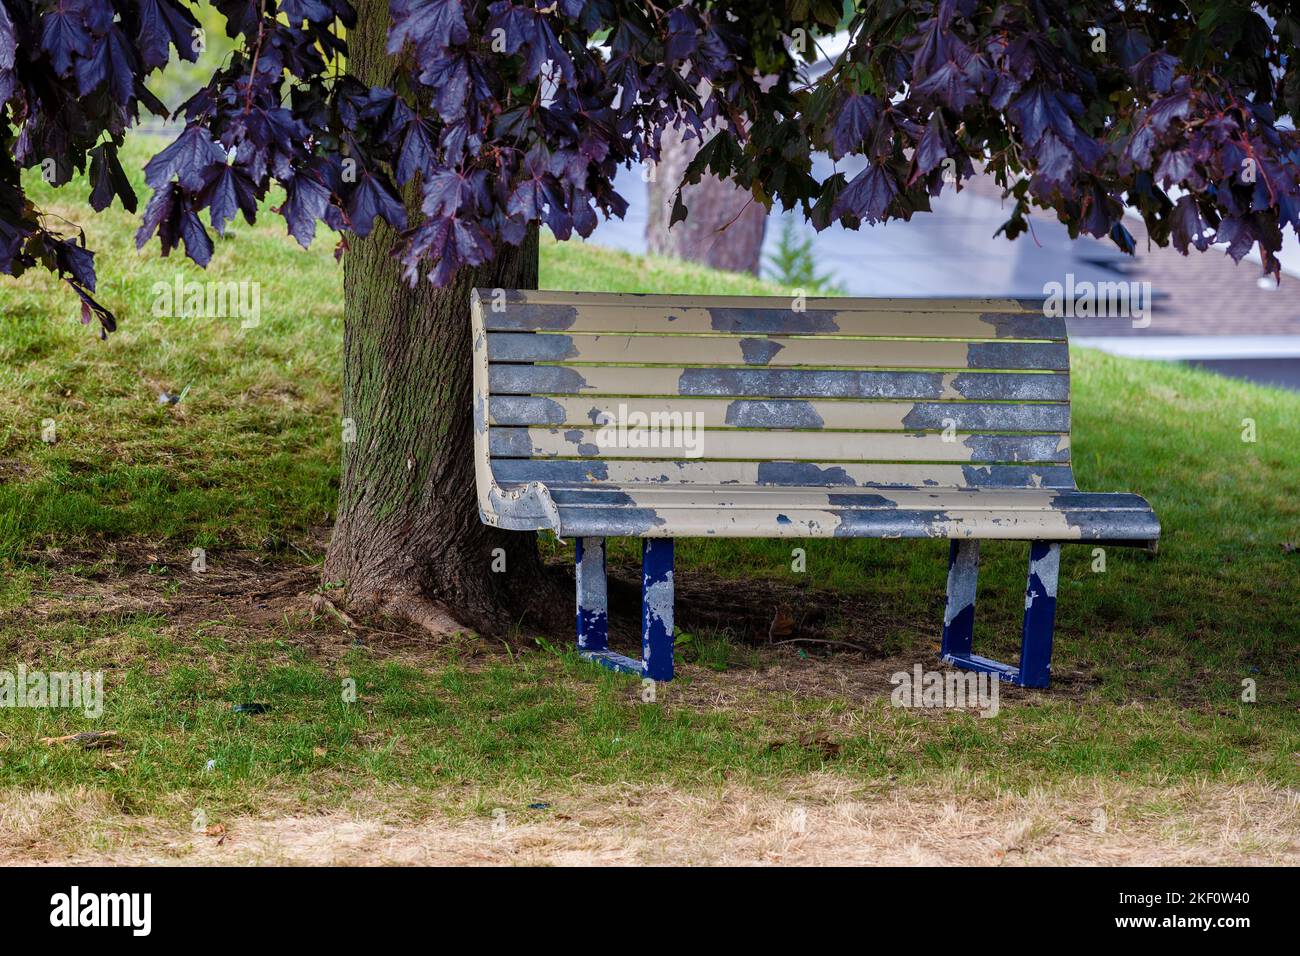 Un banc d'écaillage de peinture abîmé se trouve sous un arbre Banque D'Images